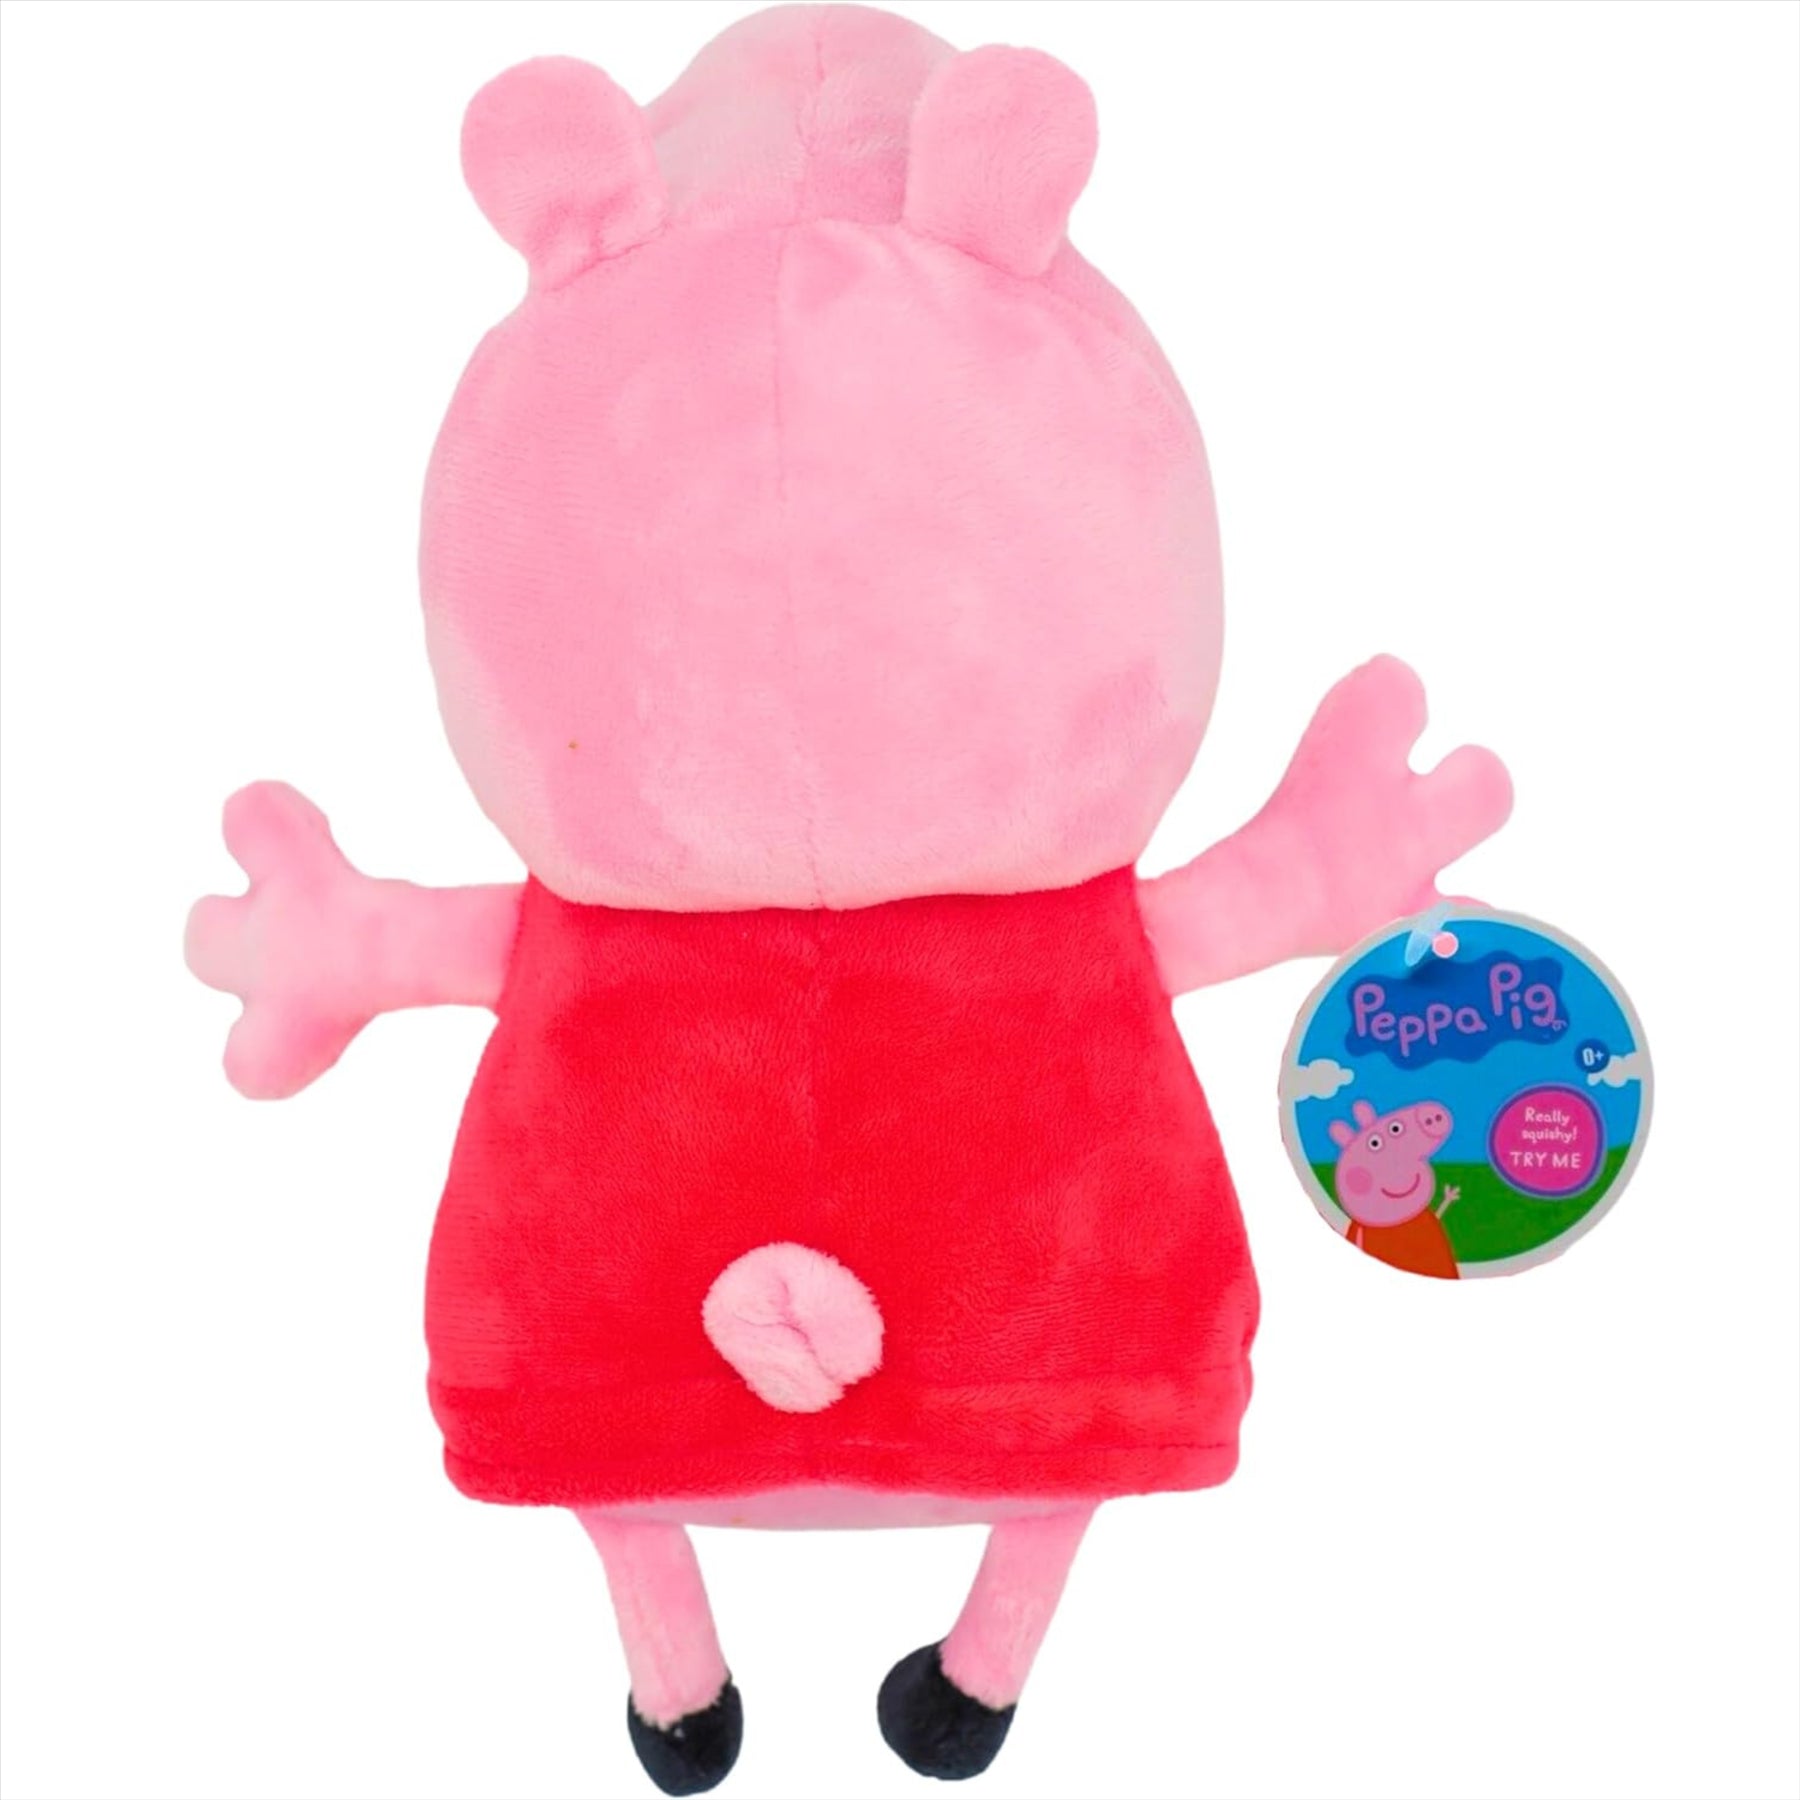 Peppa Pig - Super Soft Gift Quality Plush & Toy Set - 11" 28cm Embroidered Plush Toy Peppa, 4" 10cm Squishy Peppa & 5" 12cm Splash n Play Peppa - Toptoys2u